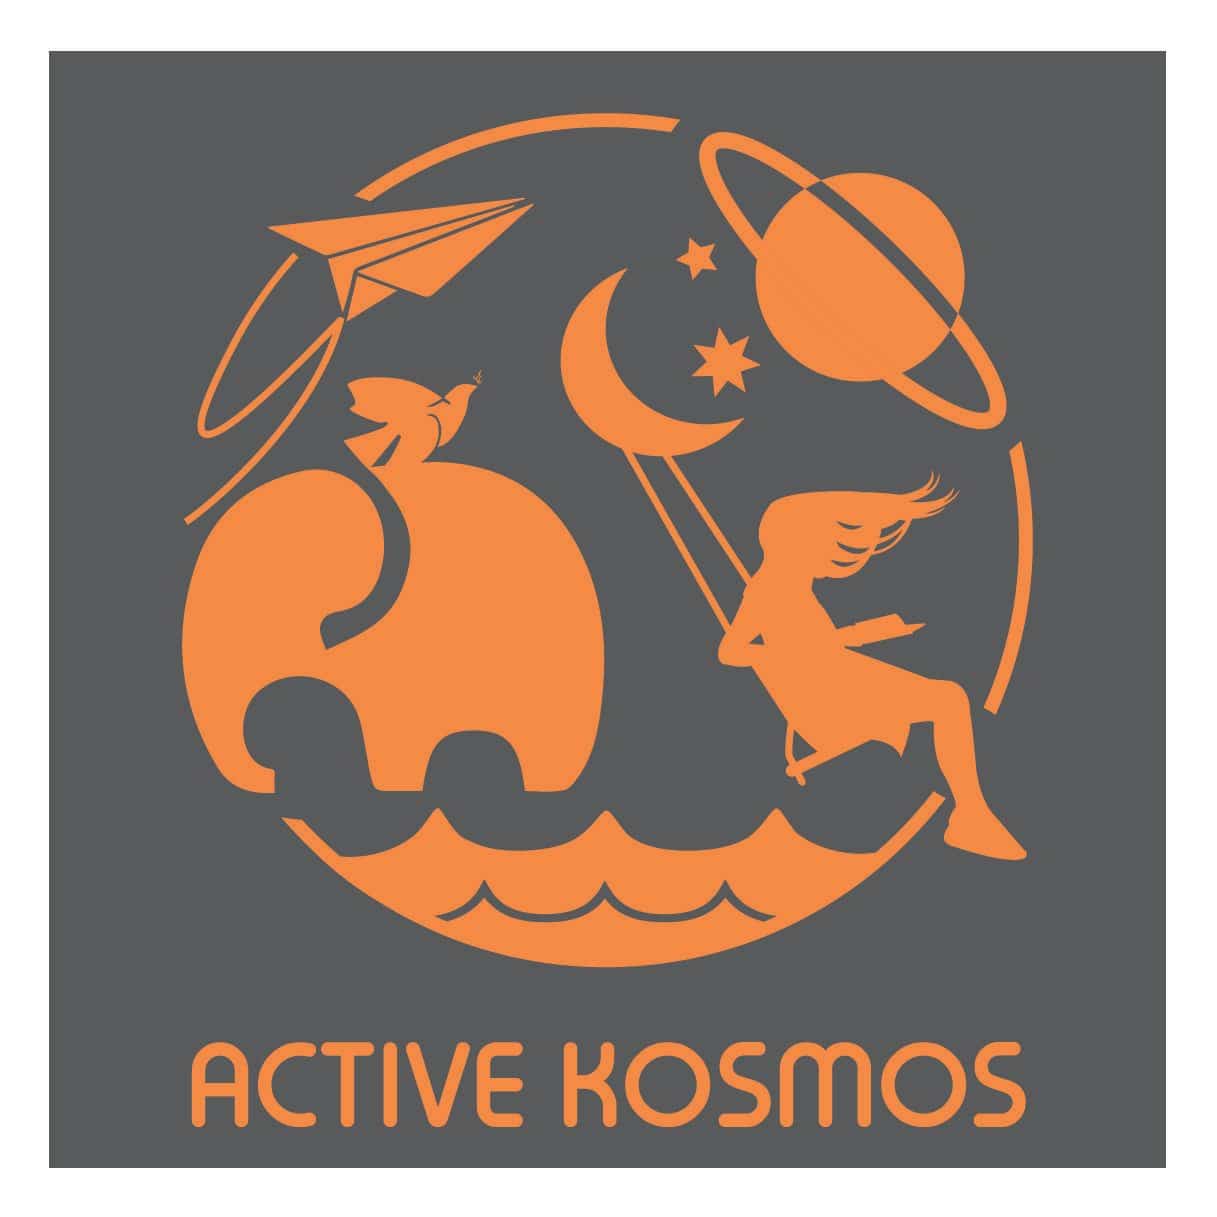 Jóvenes herencianos caminantes del mundo fundan Active Kosmos (AK) 3